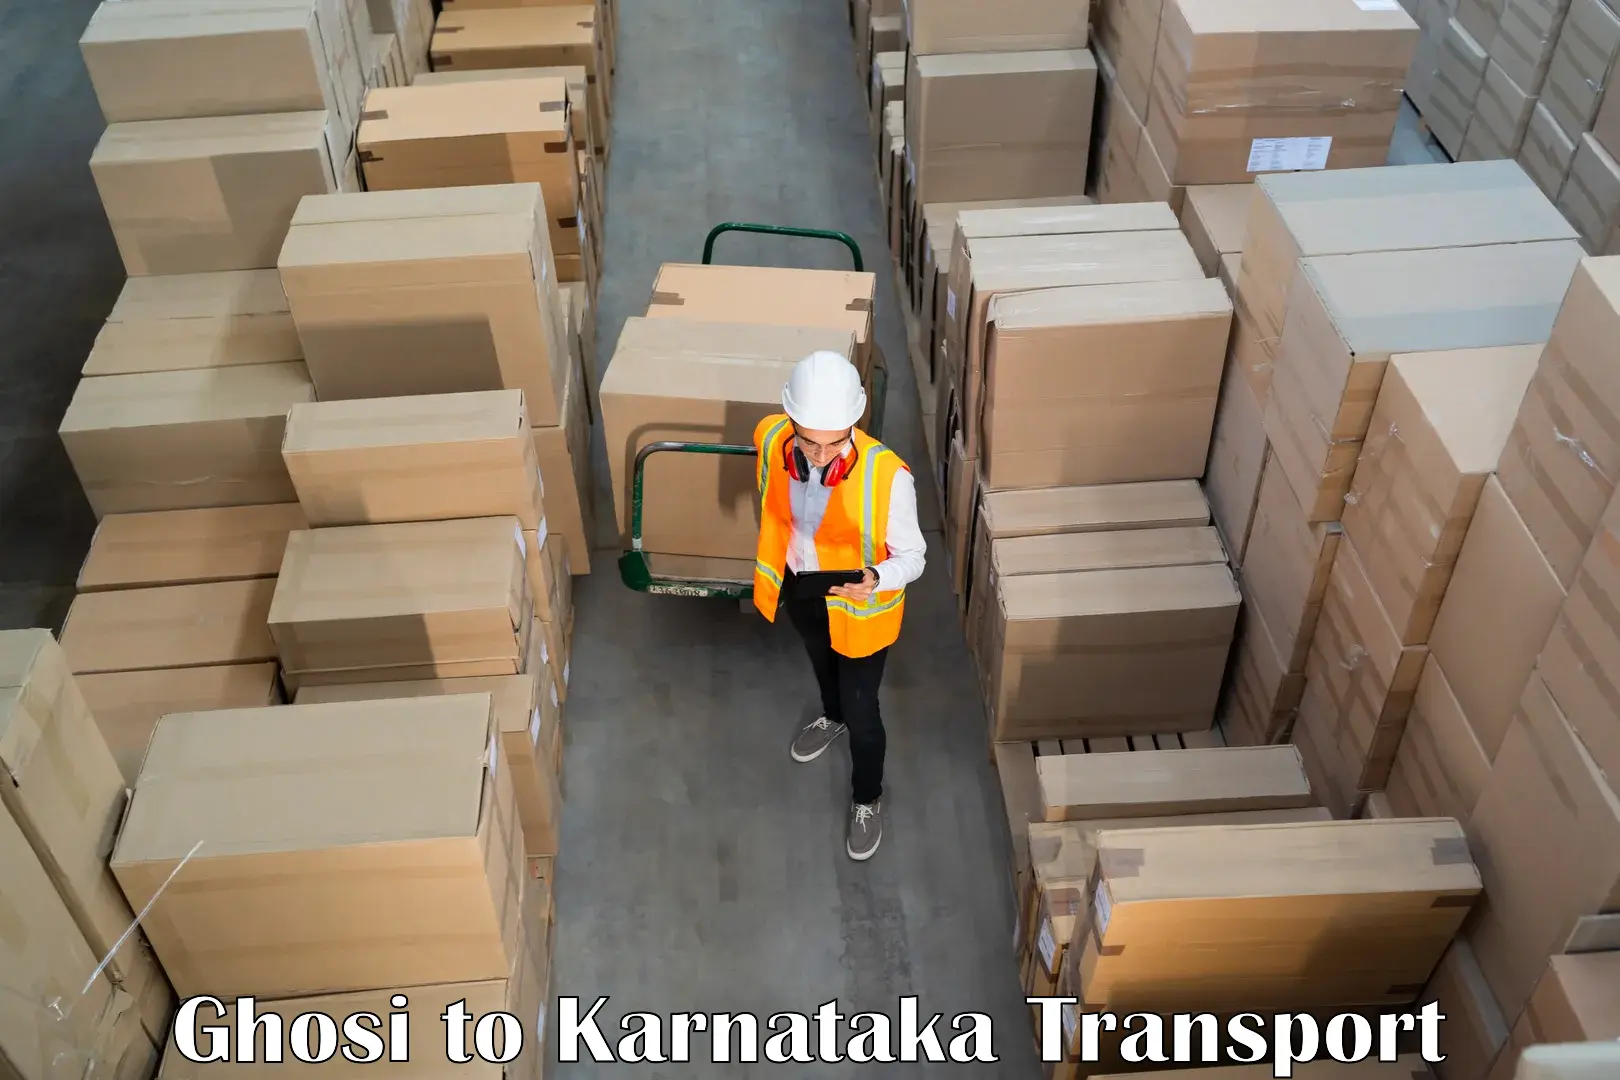 Road transport online services Ghosi to Karnataka